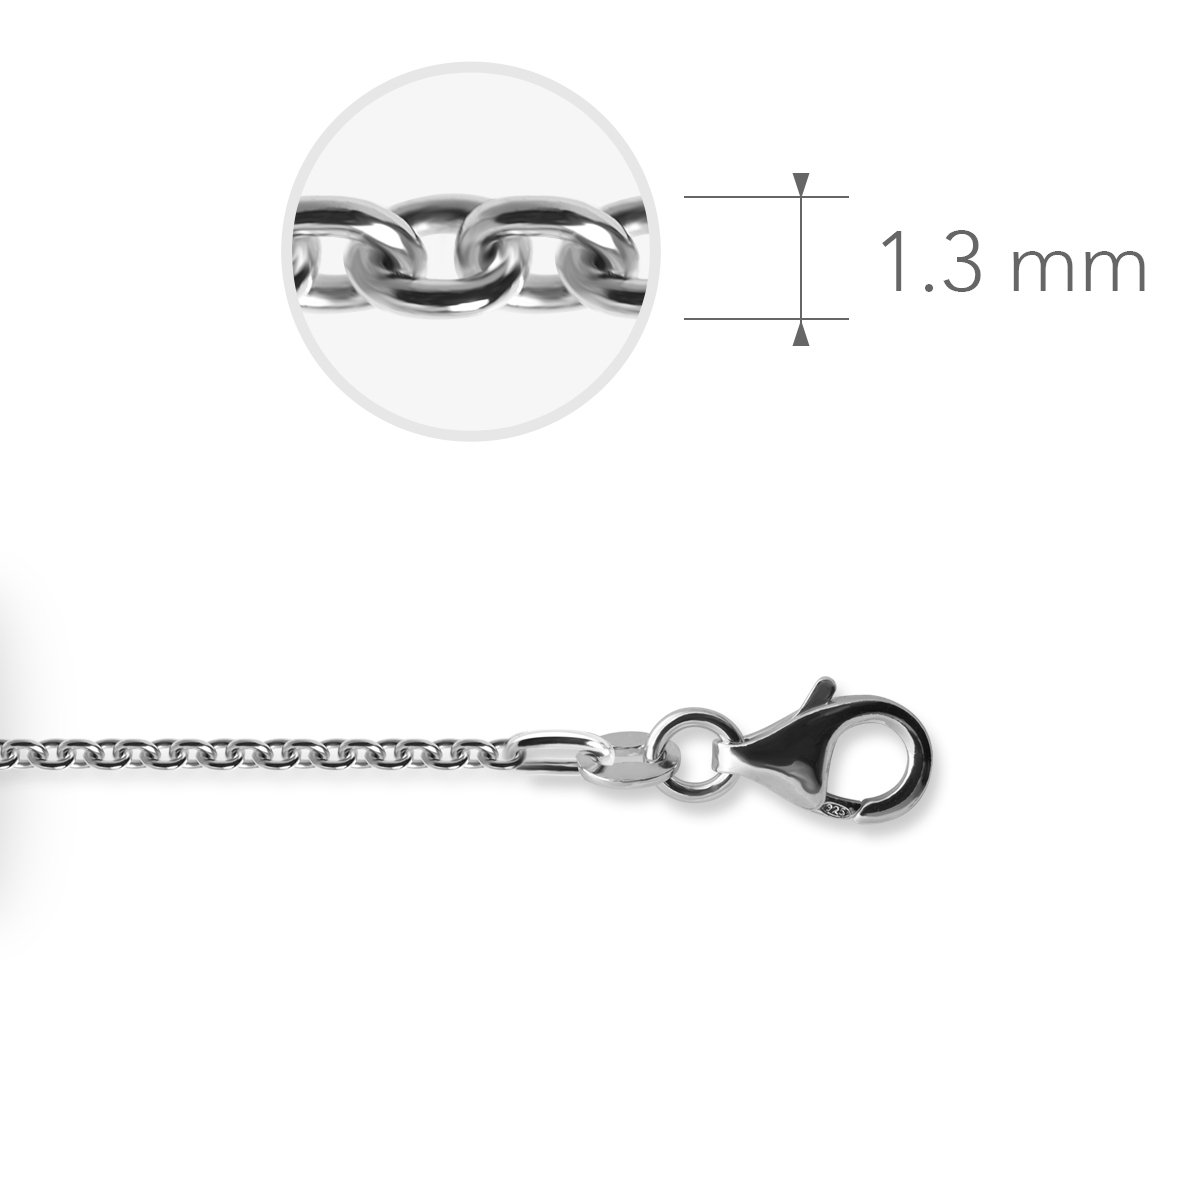 Jewels Inc. - Anker Ketting met Karabijnsluiting - 1.3mm Dik - Lengte 45cm - Gerhodineerd Zilver 925